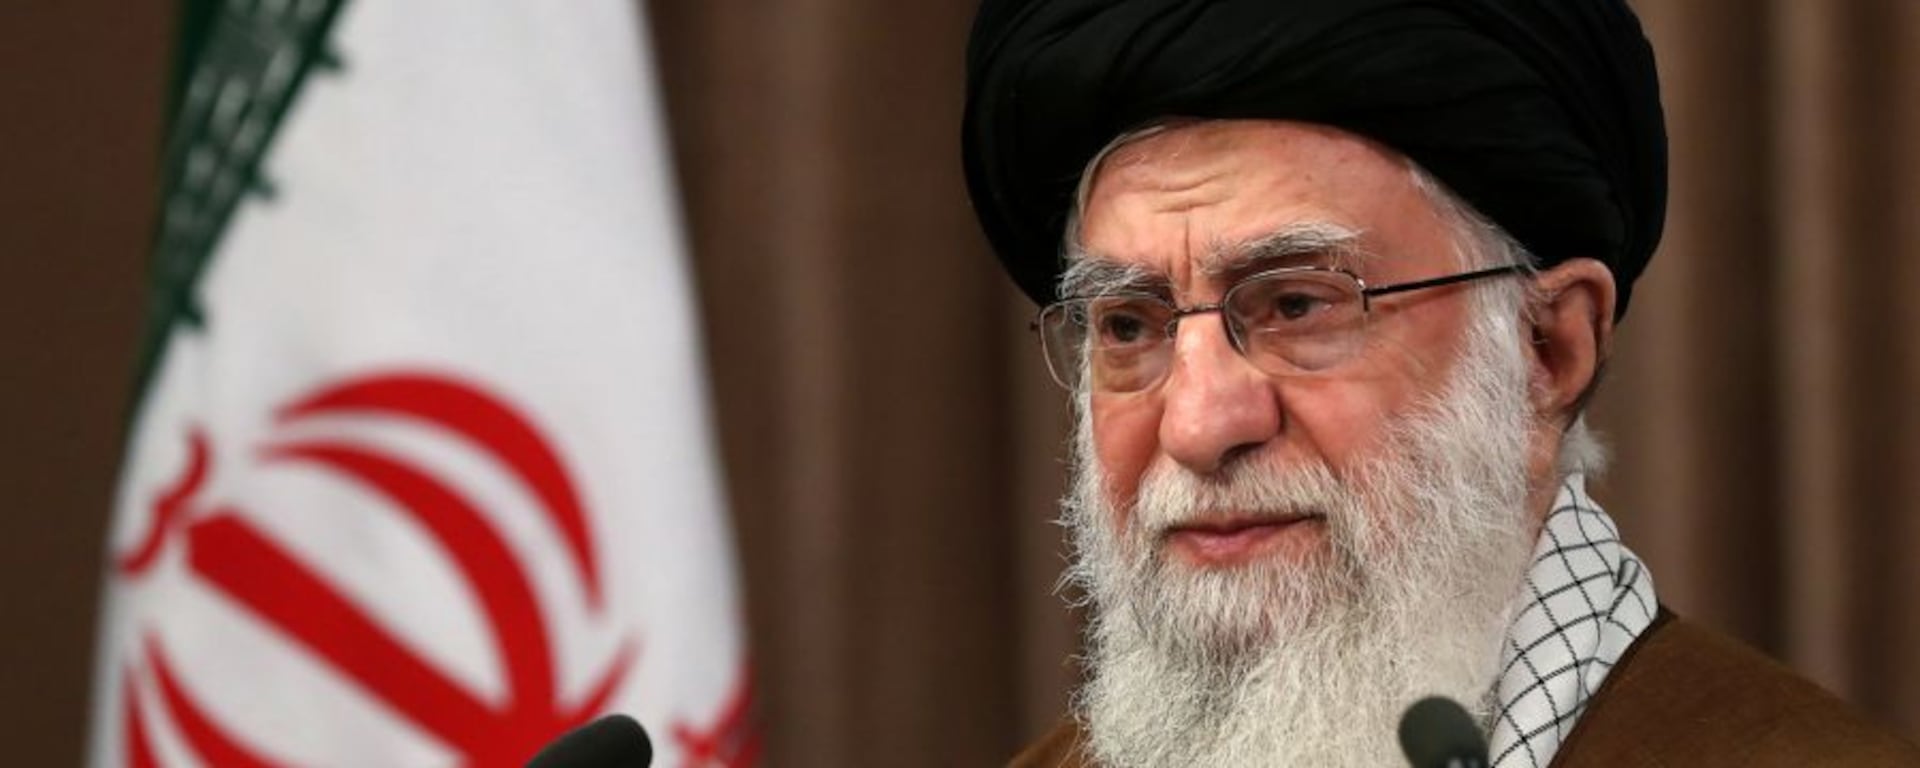 El conflicto entre EE. UU. e Irán se agudiza nuevamente: la teocracia que mueve los hilos de Medio Oriente